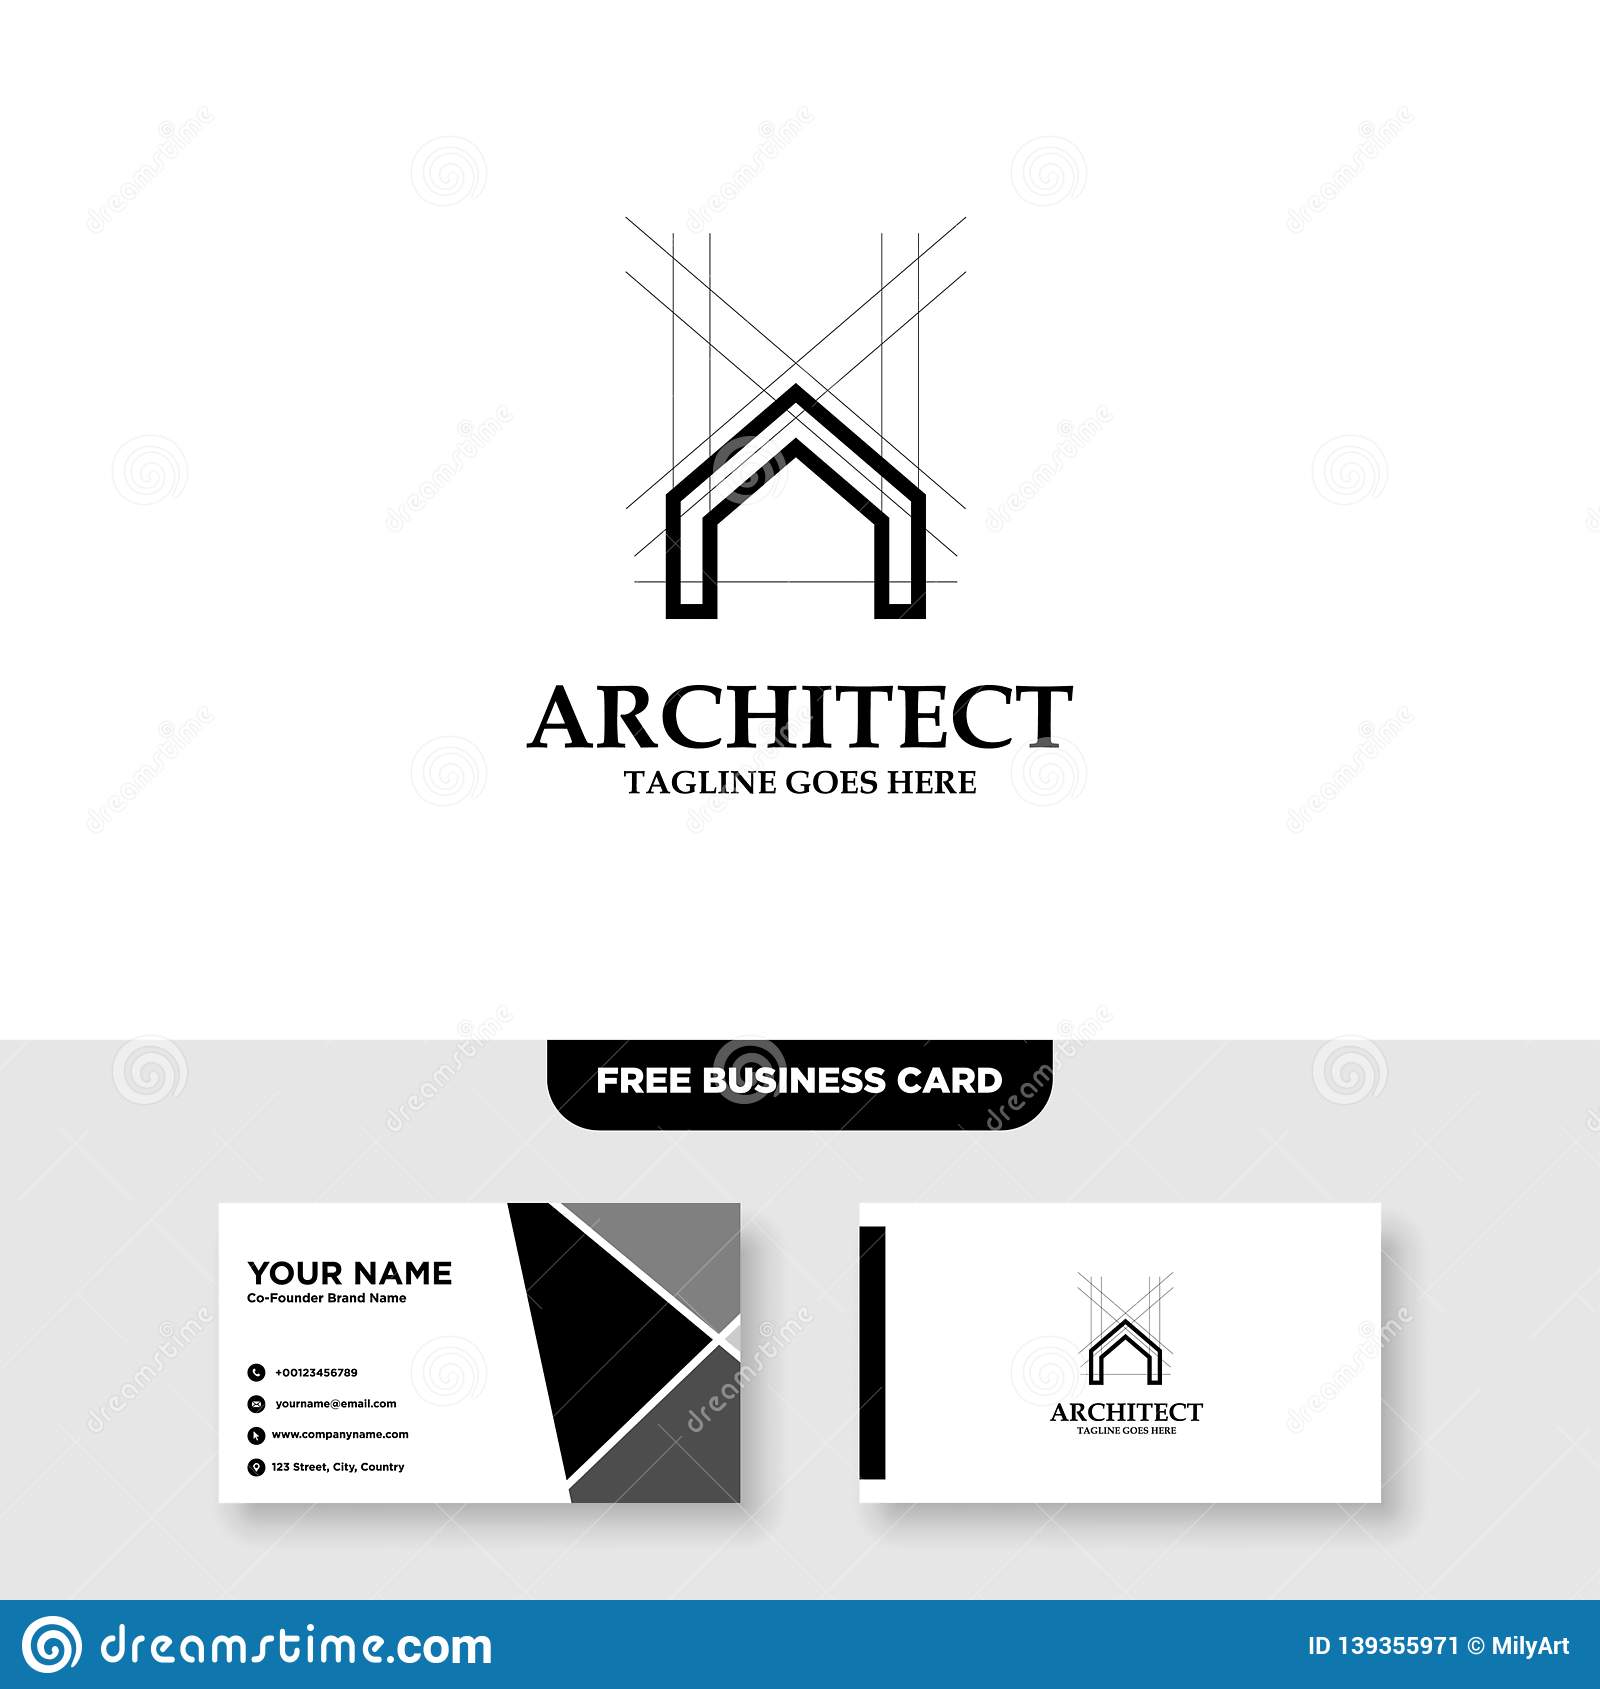 design business cards online download jpeg